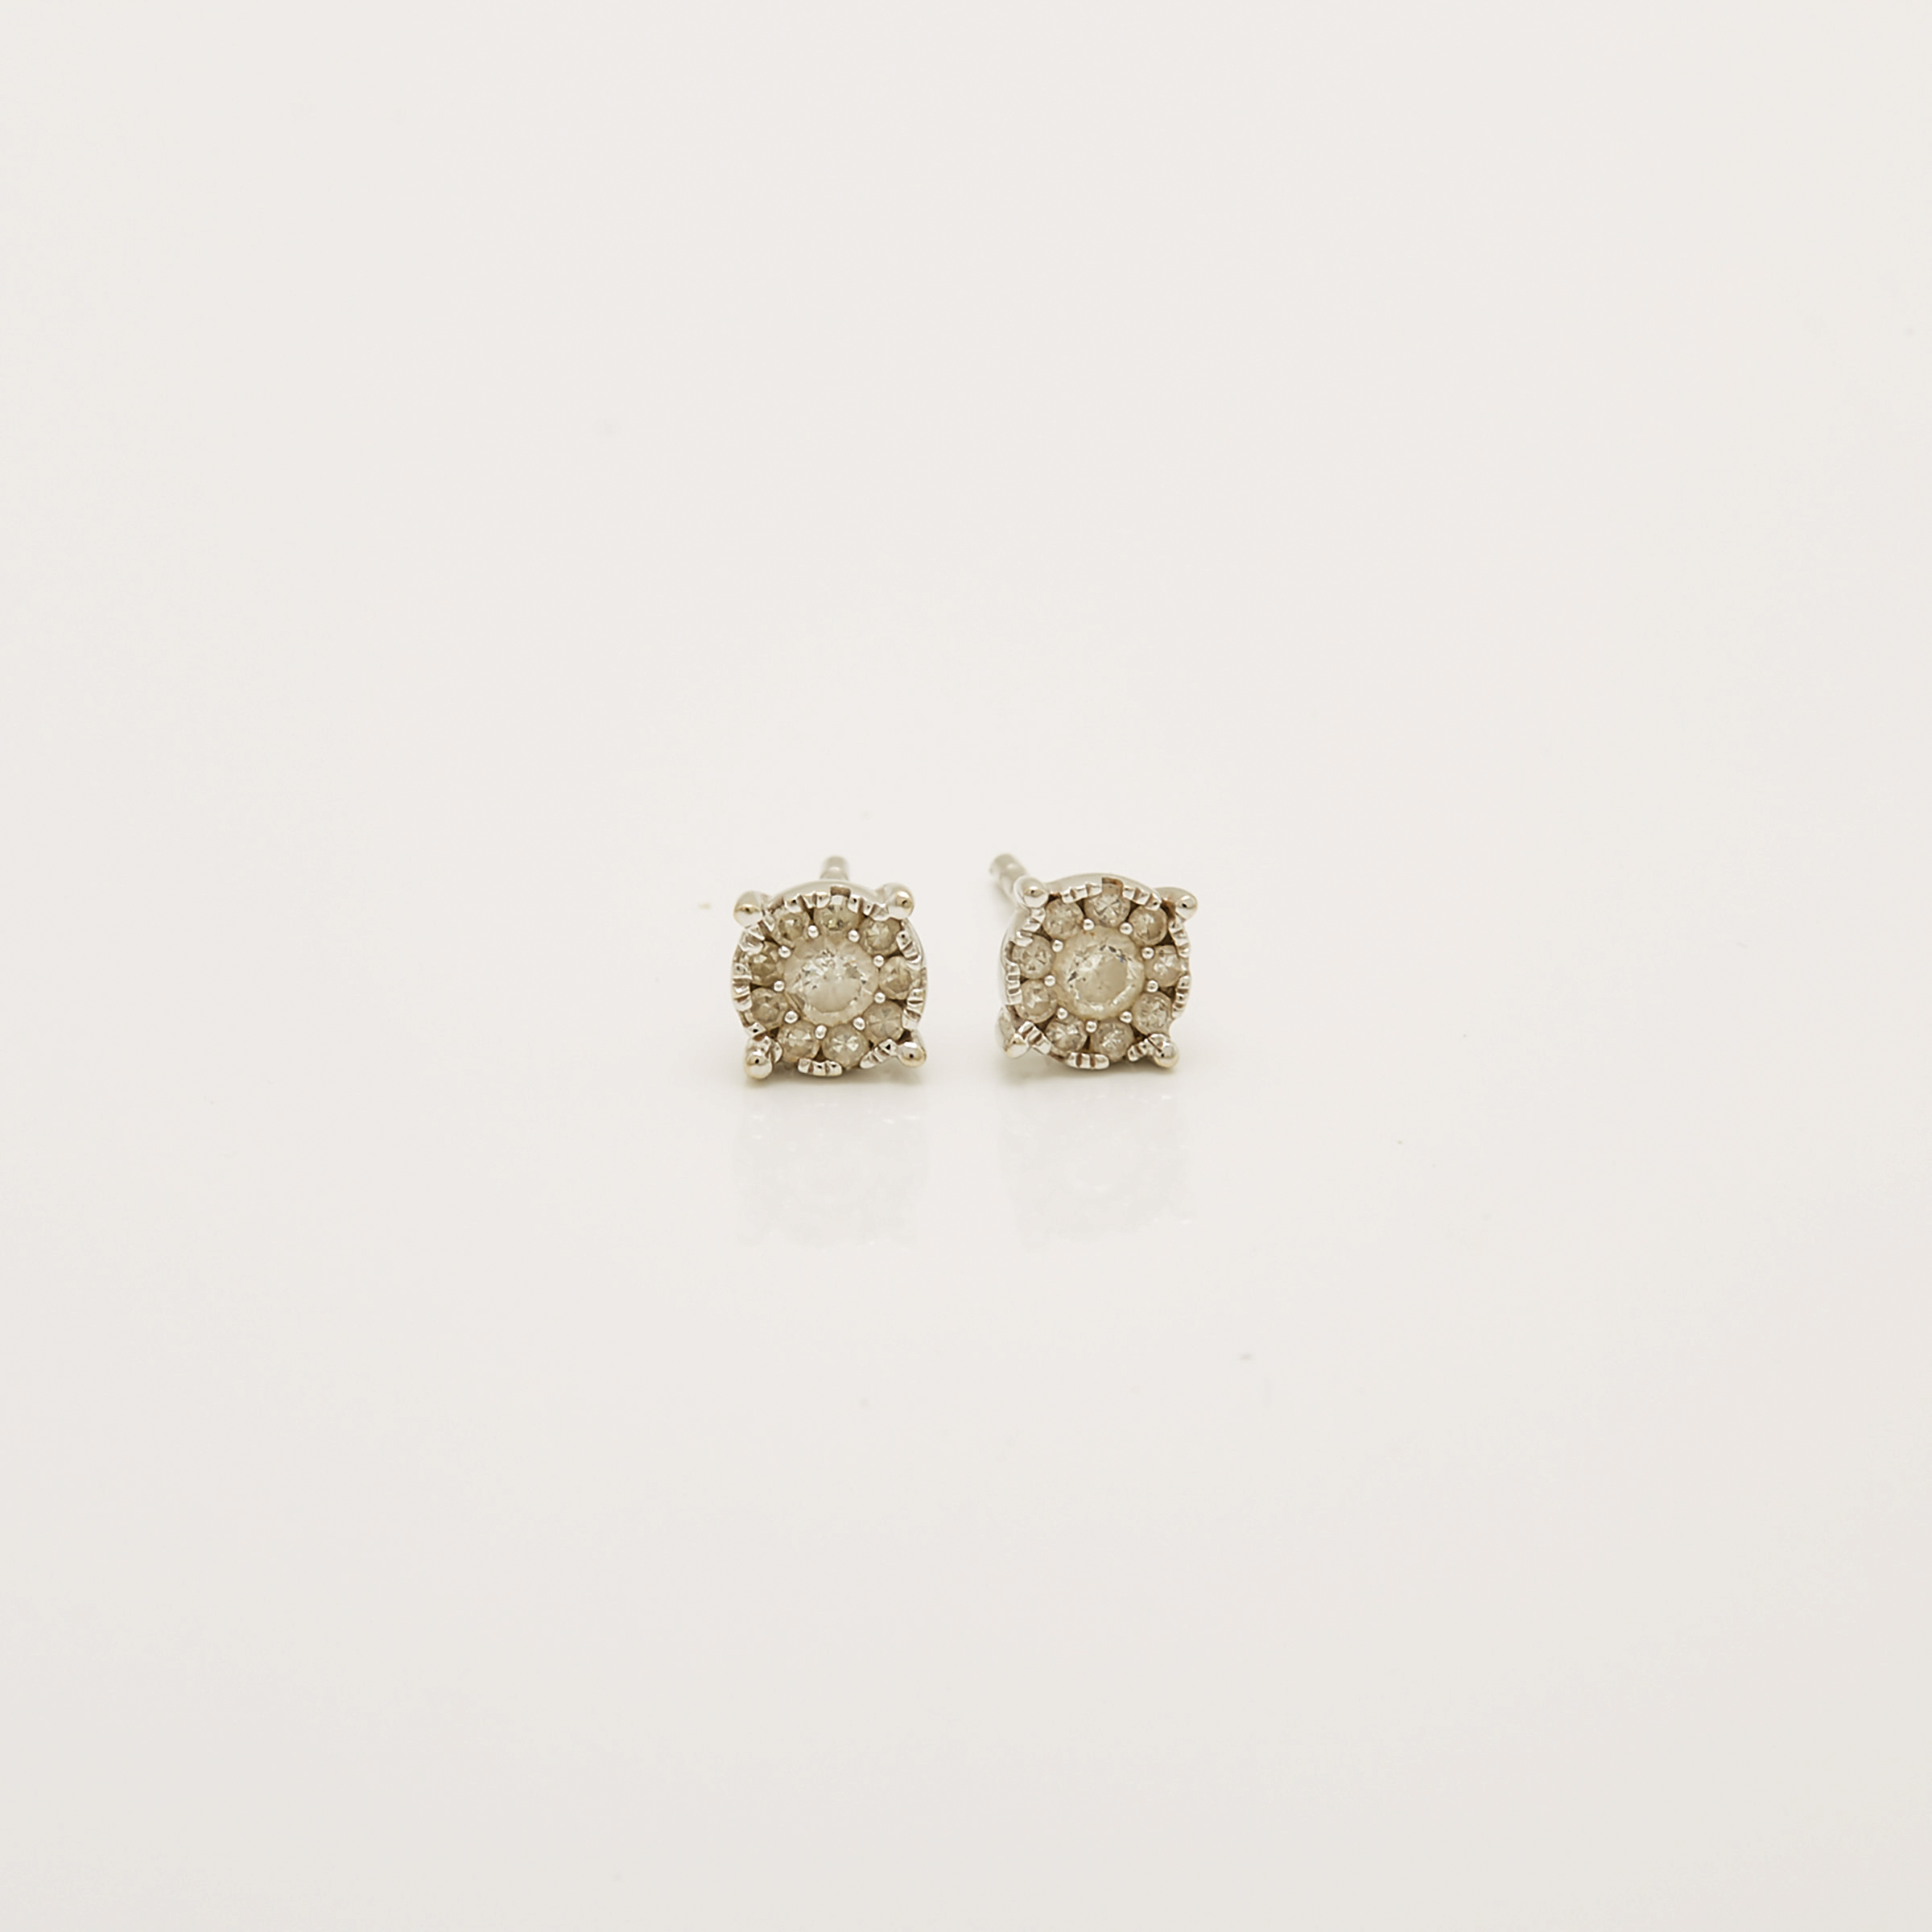 Pair of 14k White Gold Stud Earrings